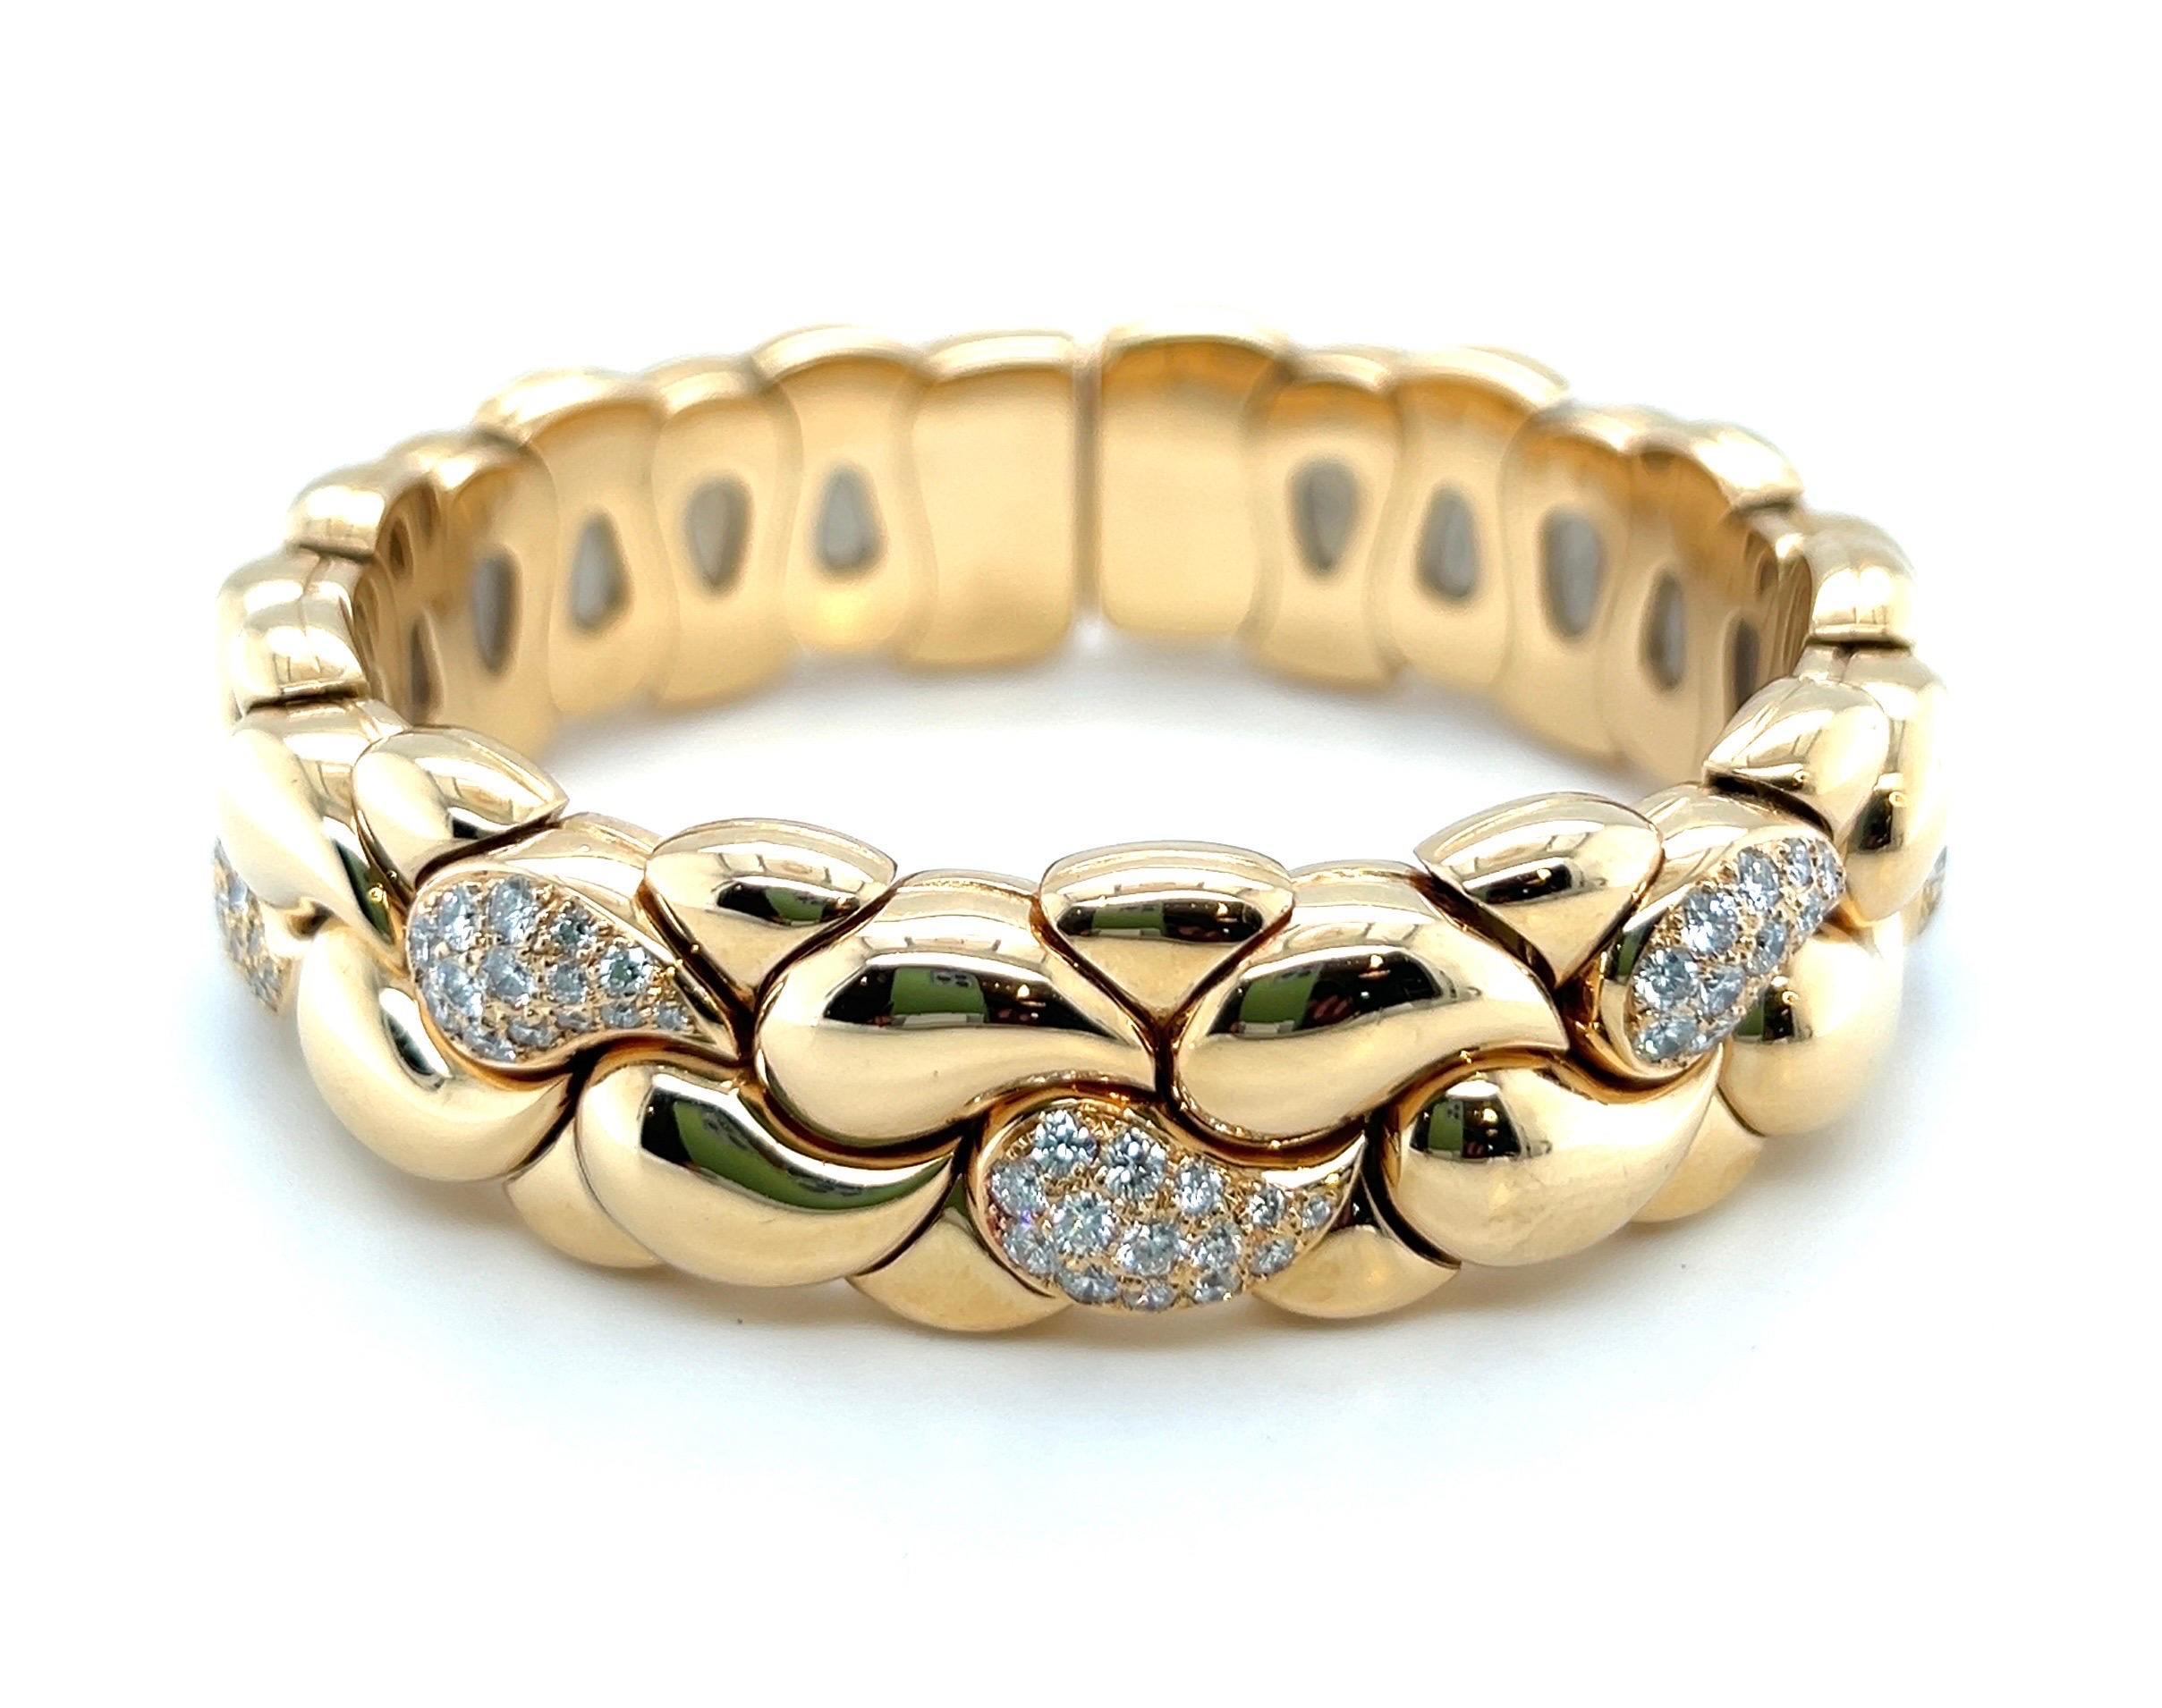 Remarquable bracelet Casmir en or jaune 18 carats et diamants du célèbre joaillier suisse de tradition Chopard.

Bracelet souple, conçu comme une série de liens paisley en or légèrement bombé, dont sept sont pavés de diamants taillés en brillant